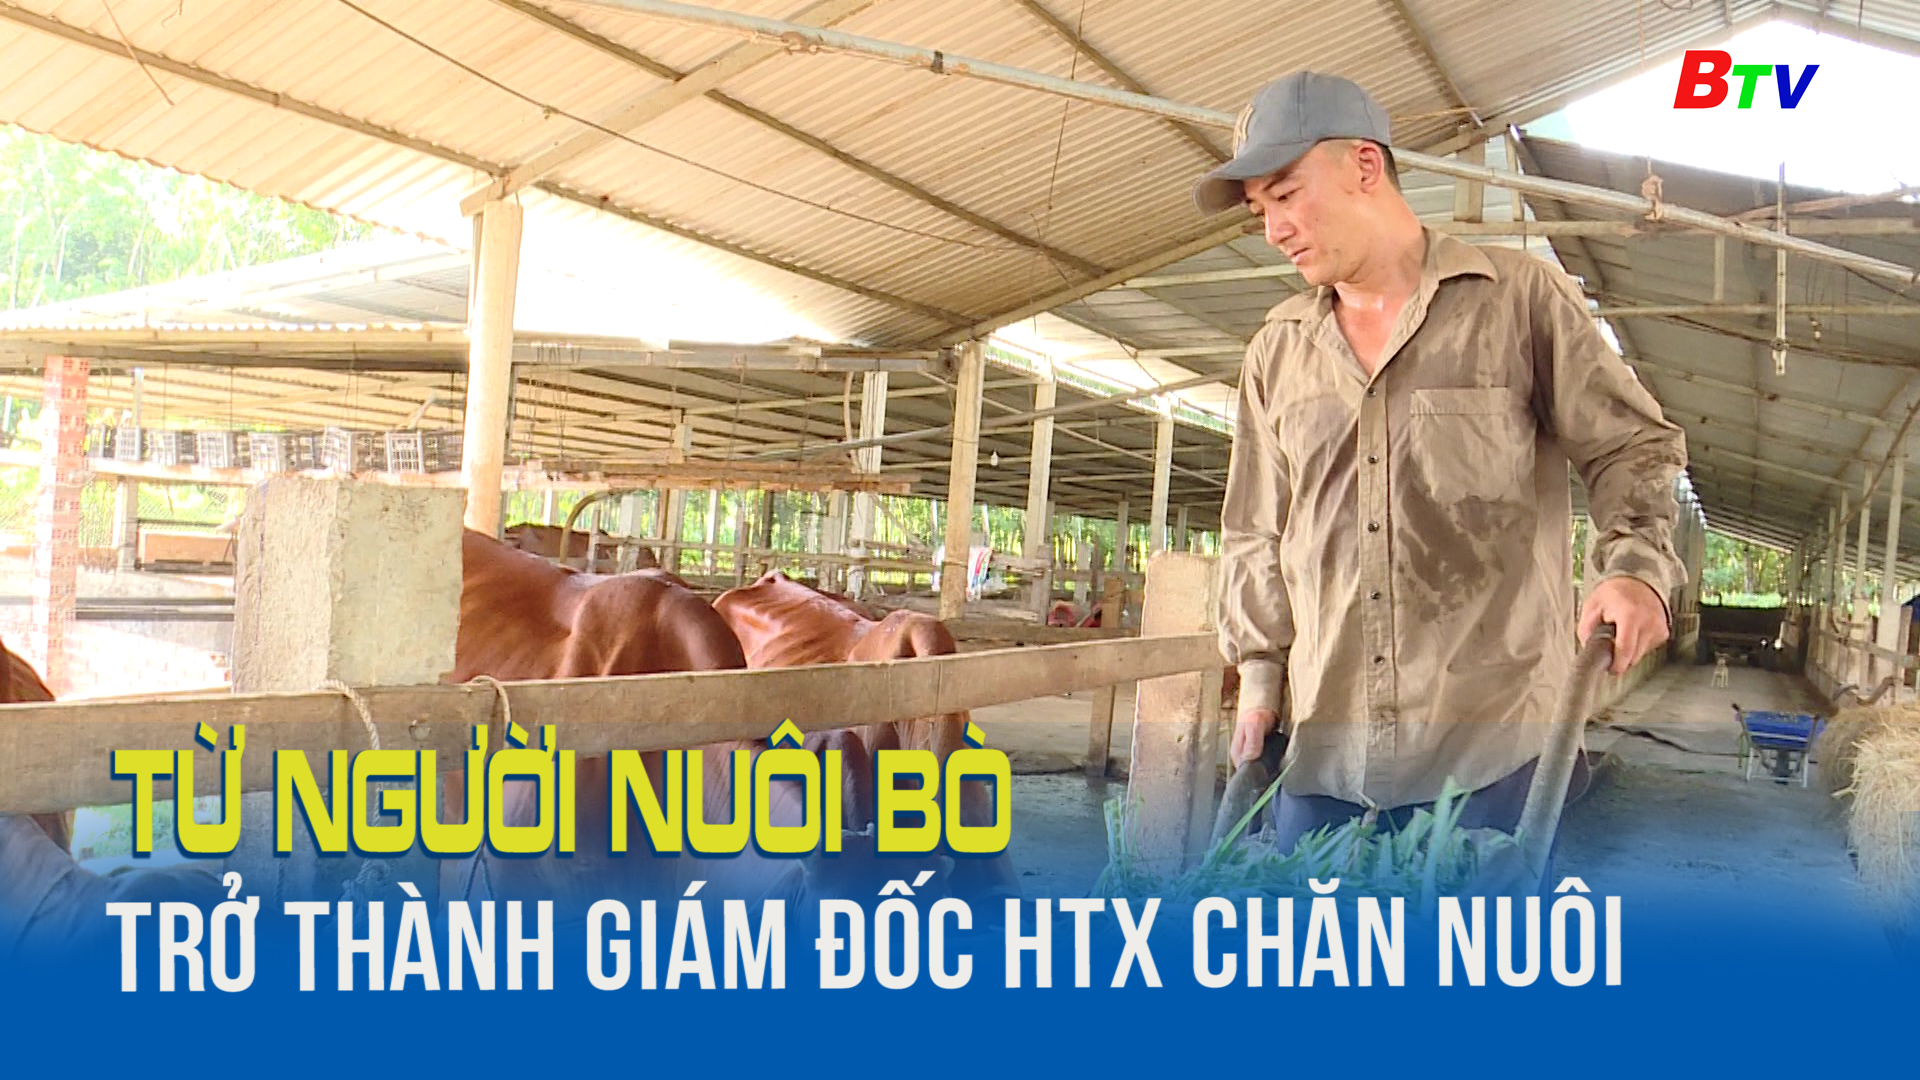 Từ người nuôi bò trở thành giám đốc HTX chăn nuôi